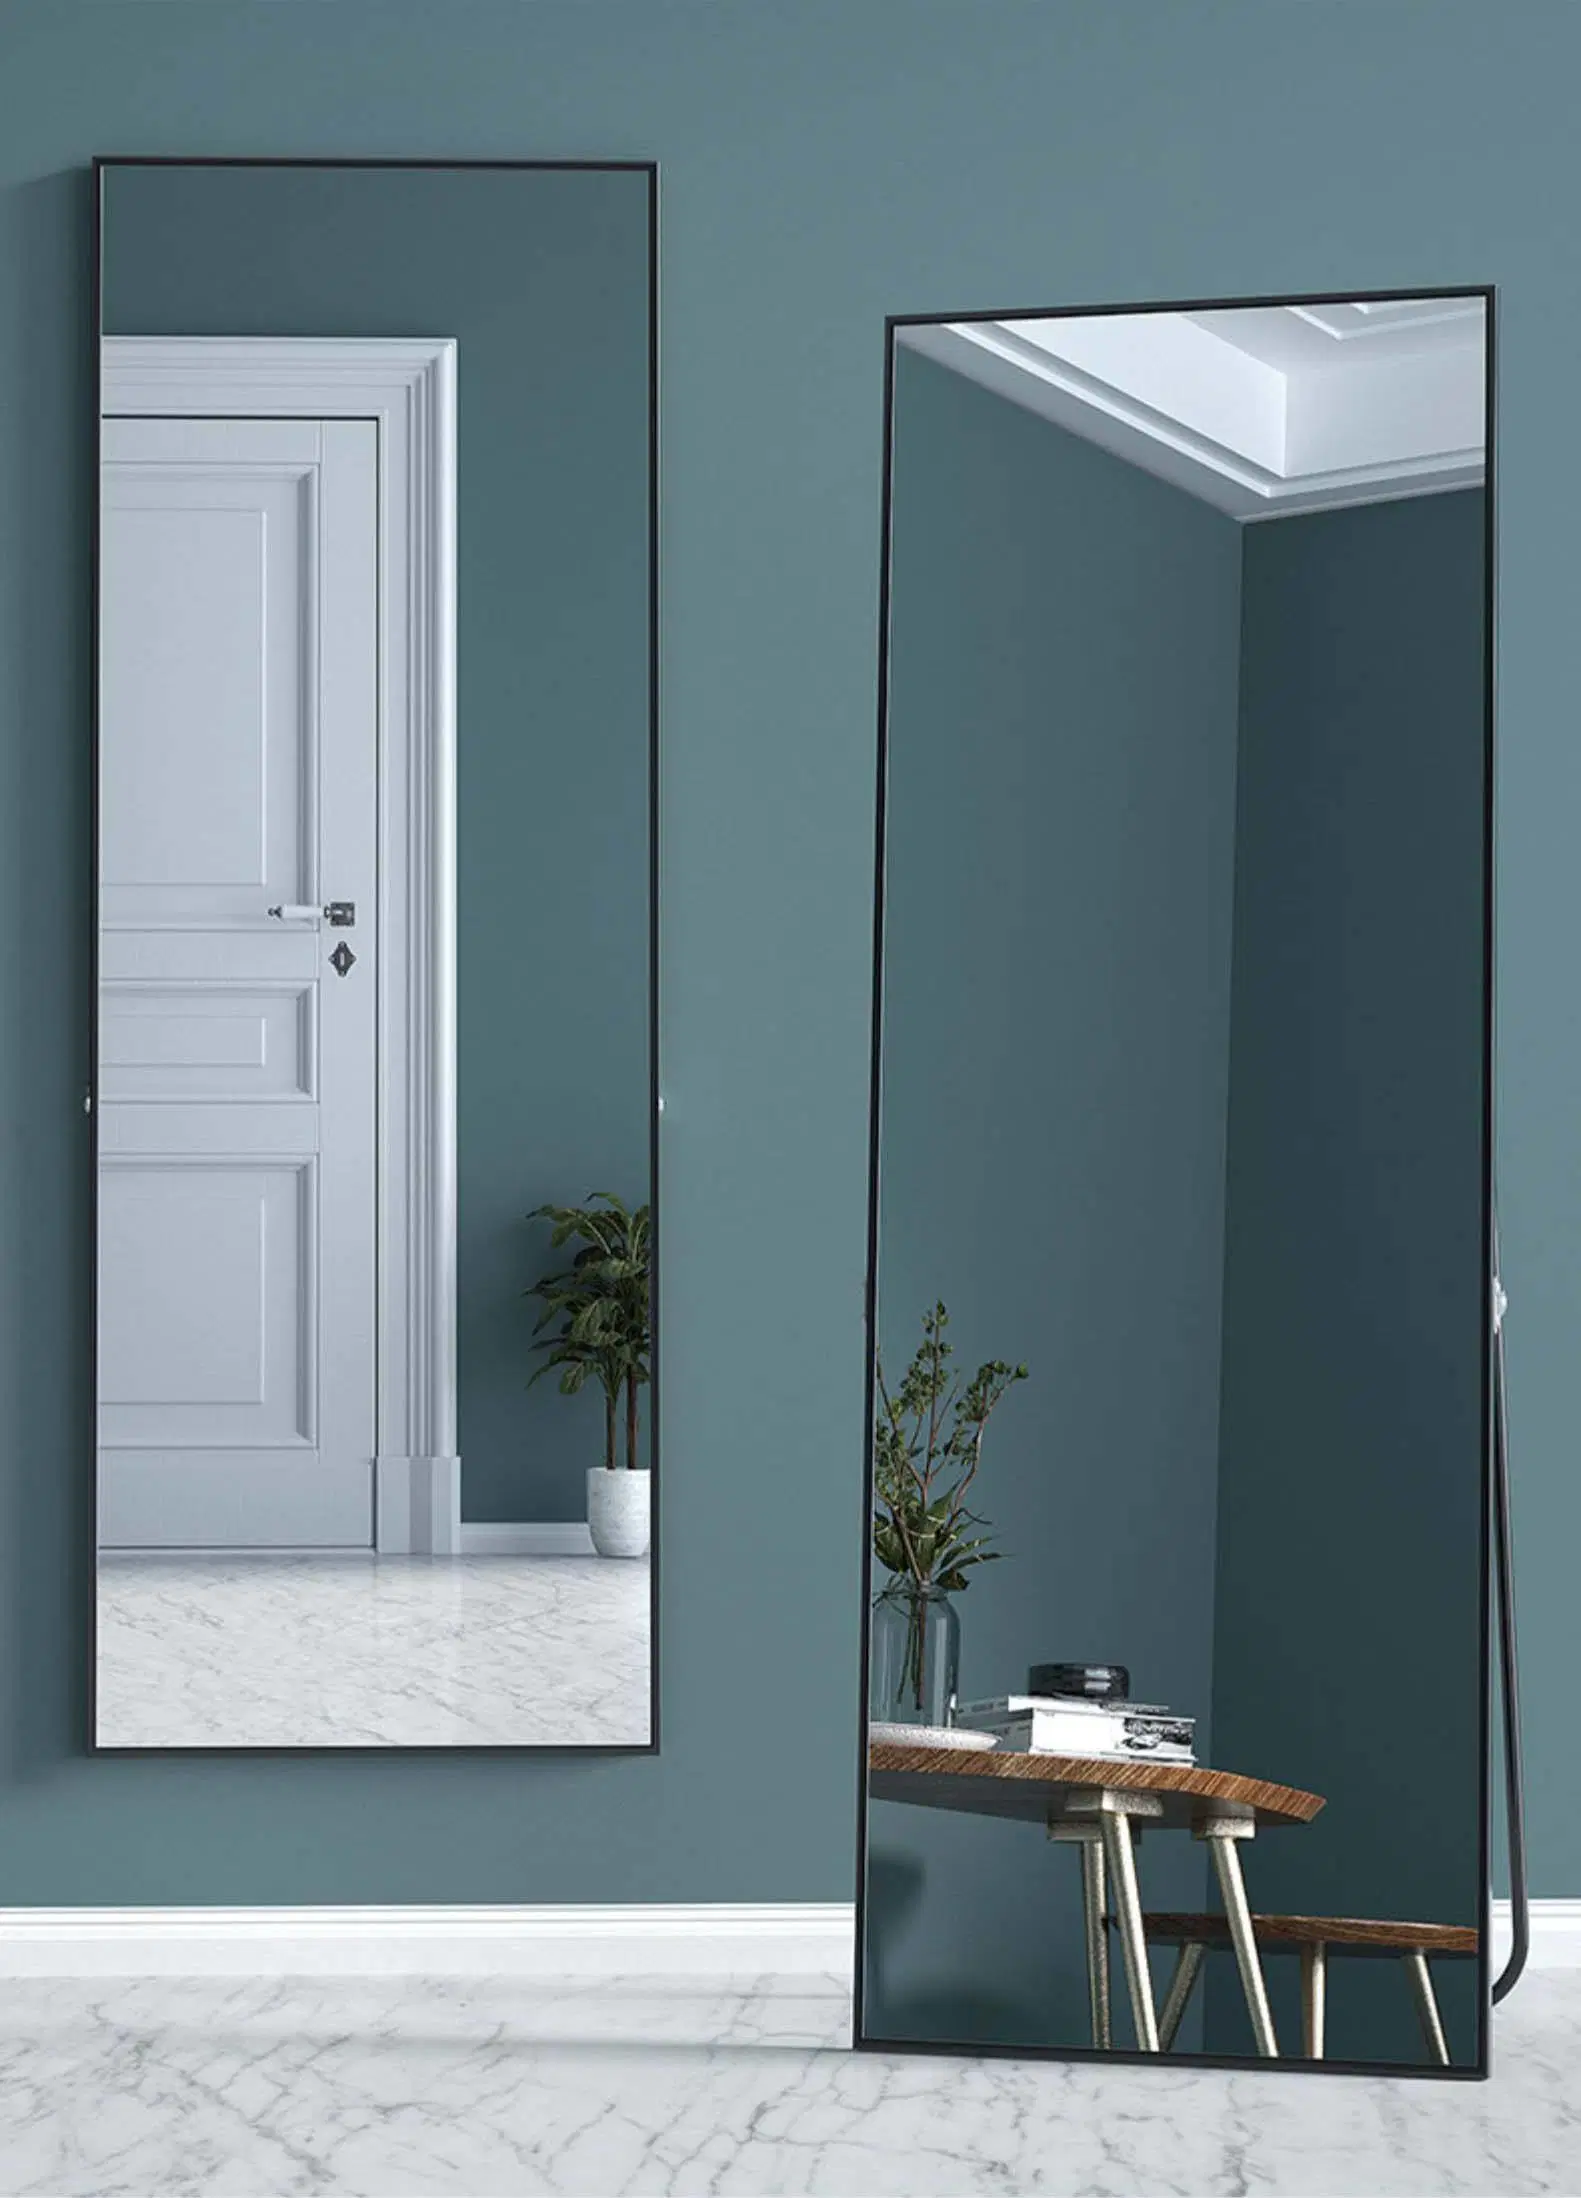 Зеркало в полный рост пол одежду сохранить косметические зеркала заднего вида установки устраивающих магазин большие стеклянные зеркало в ванной